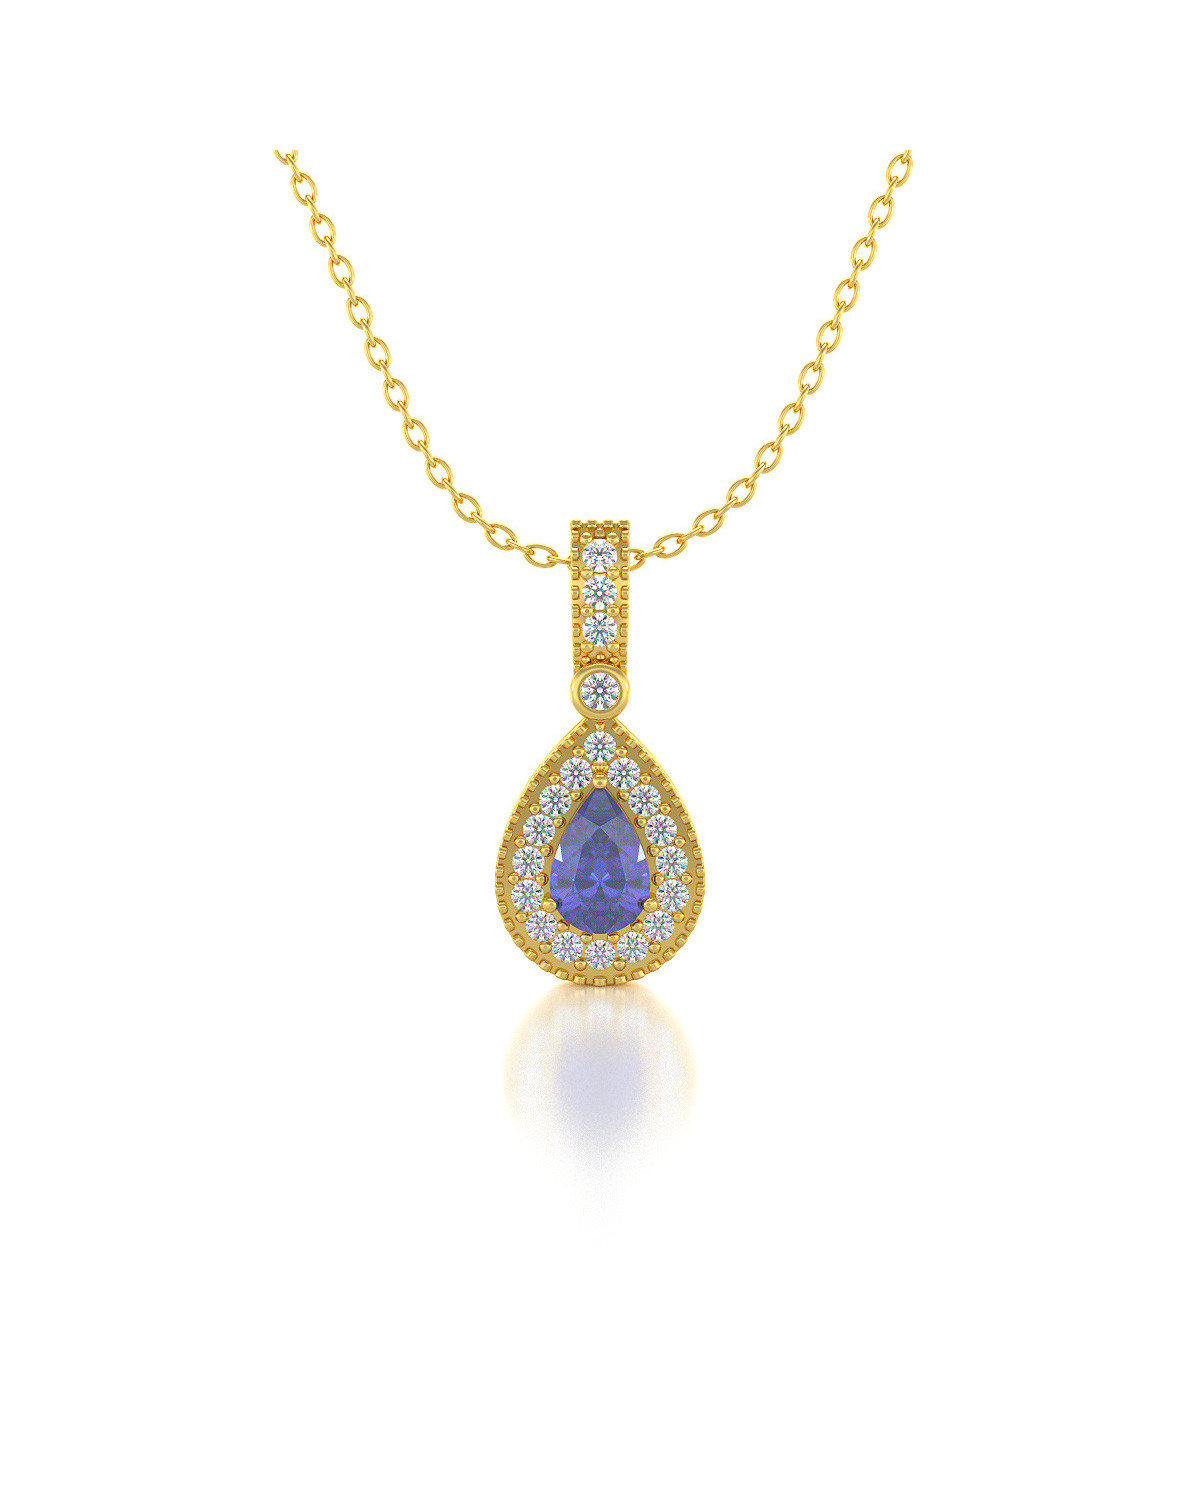 14K Gold Tanzanite Diamonds Necklace Pendant Gold Chain included